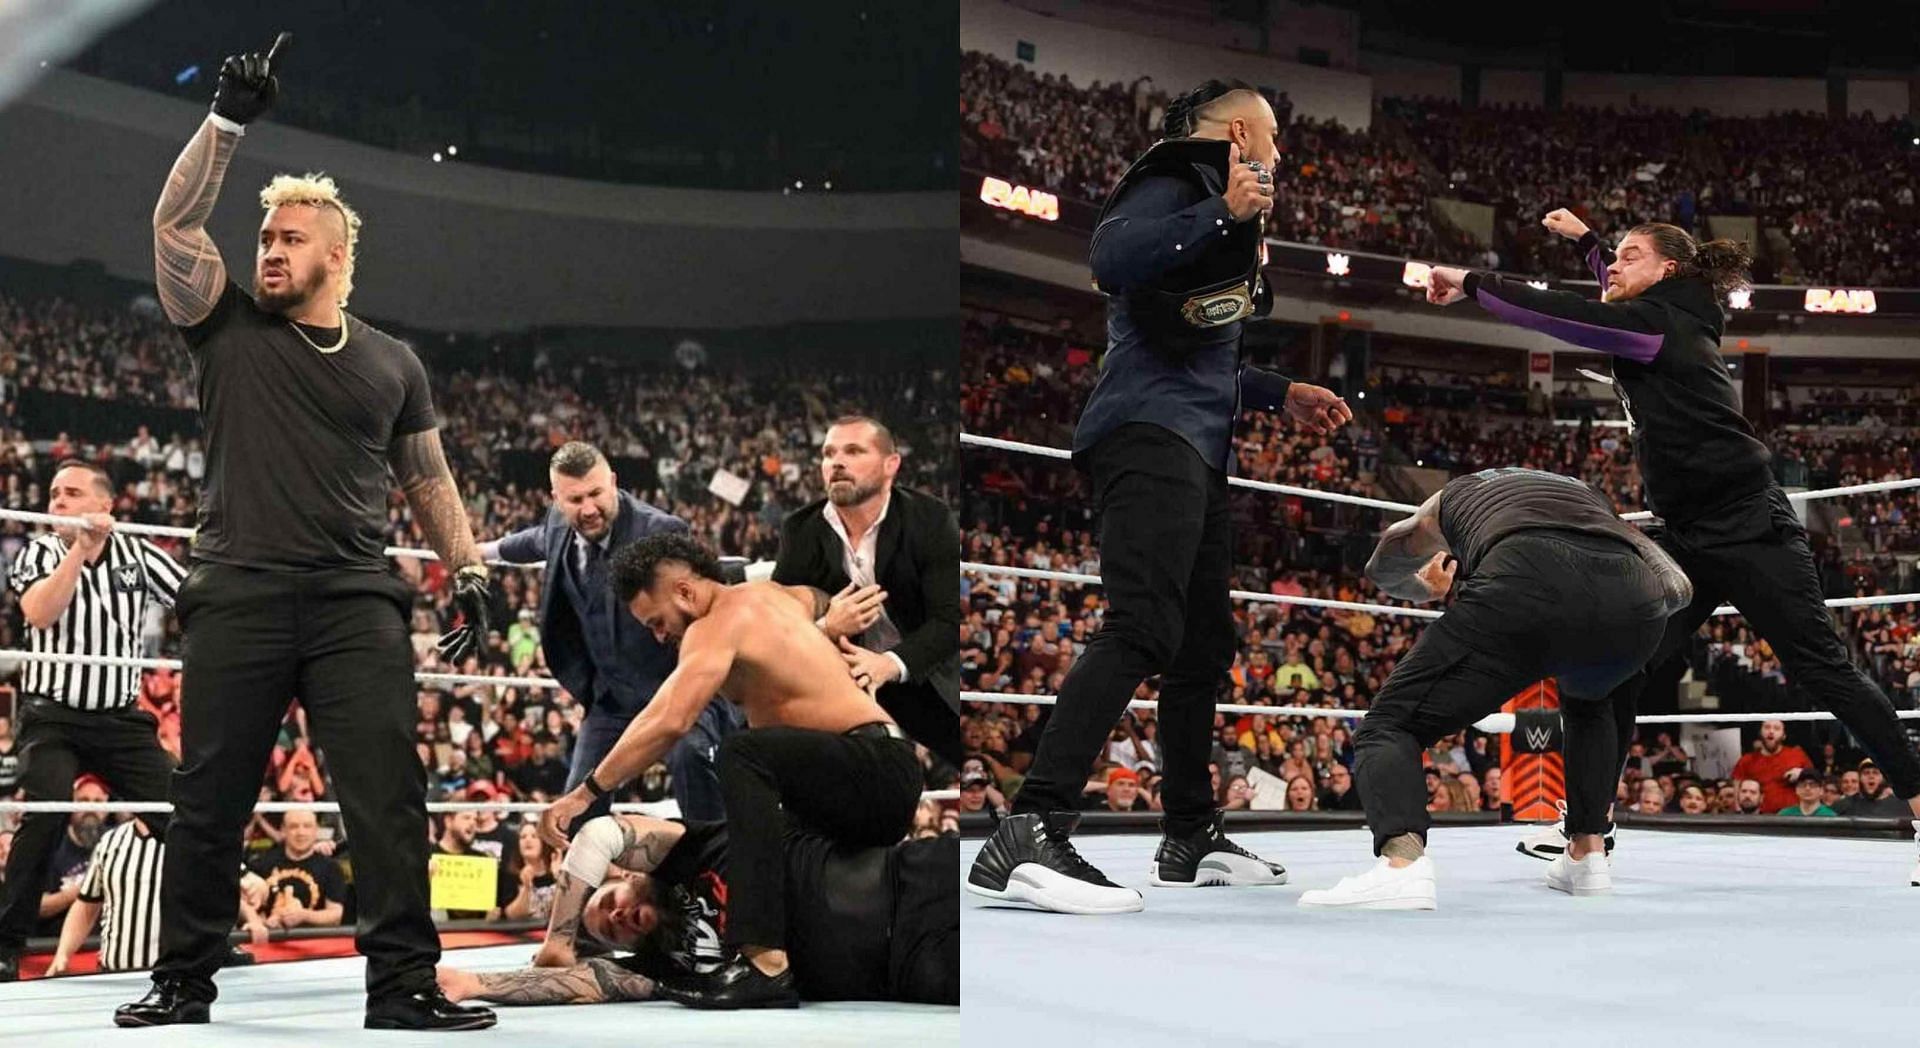 WWE Backlash France में दखलअंदाजी से बिगड़ सकता है माहौल